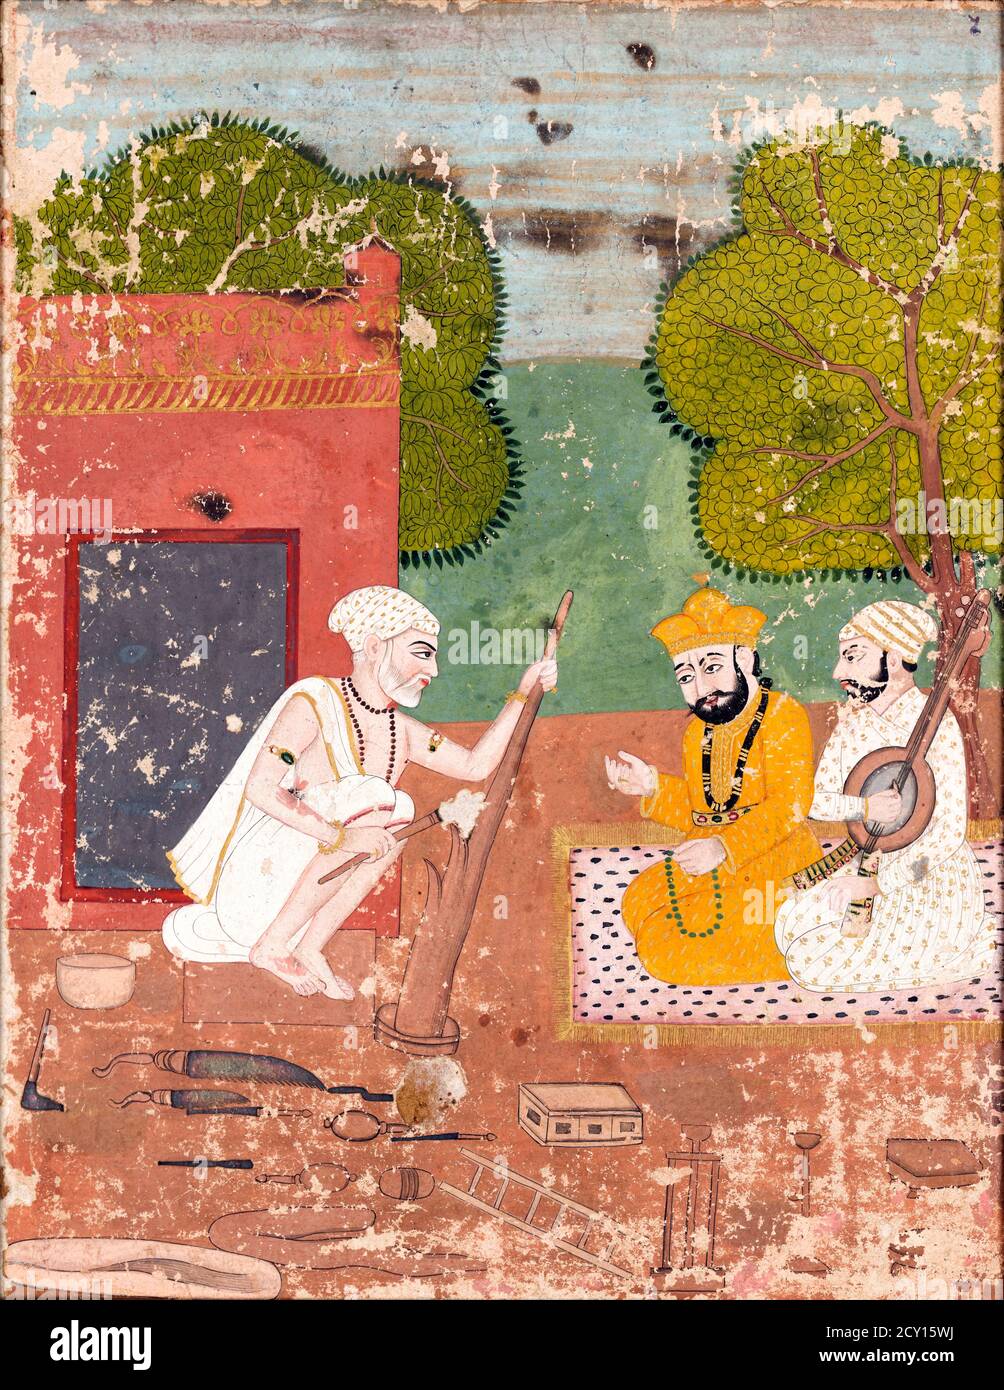 Guru Nanak avec Mardana dans la Maison de Bhai Lalu, peinture, pigment sur papier, c.1825-50. Guru Nanak a été le premier Guru sikh et le fondateur du Sikhisme. Banque D'Images